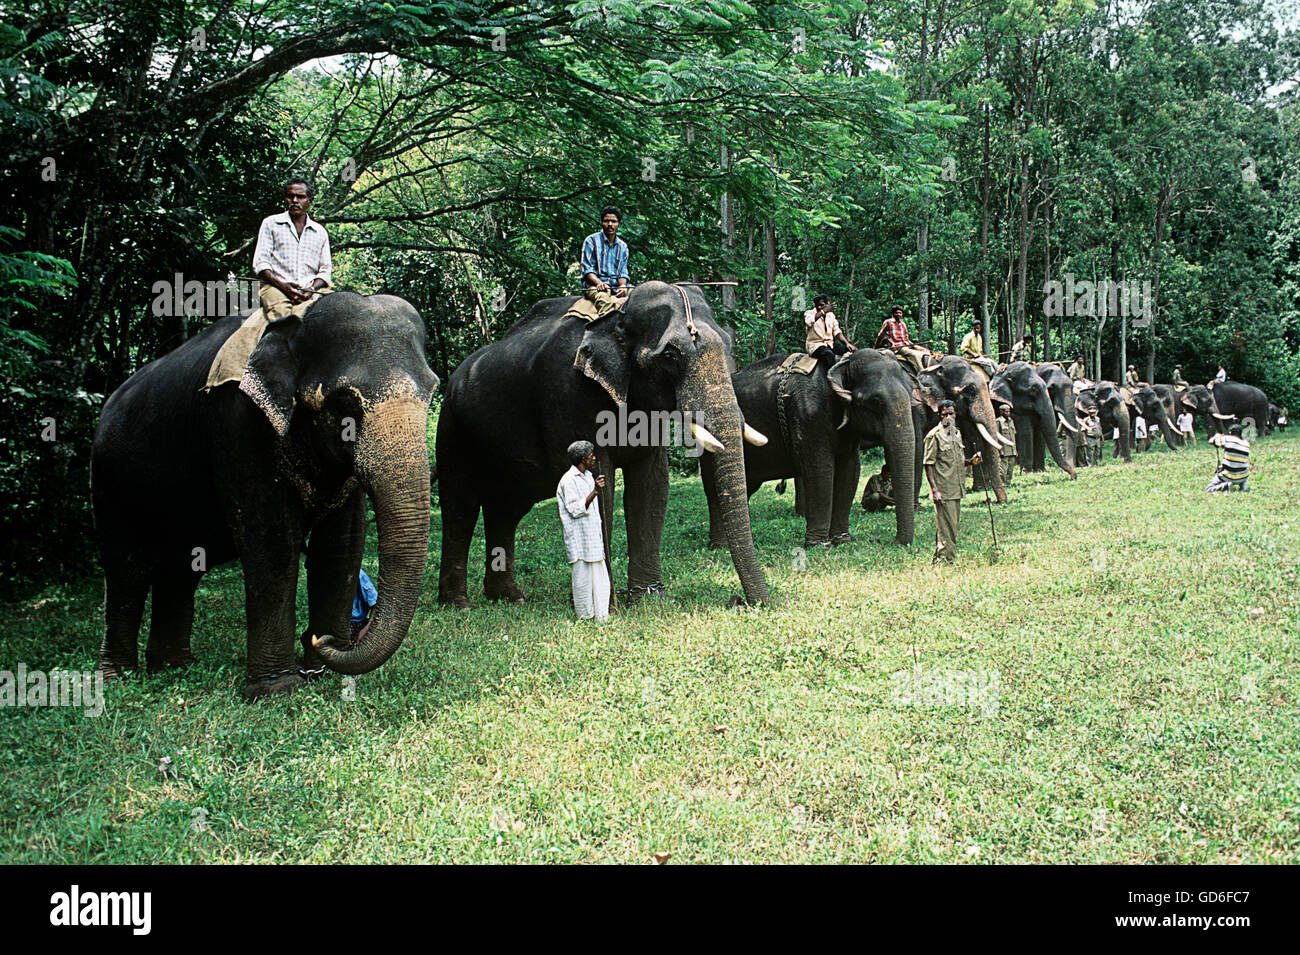 Elephant Day celebration Stock Photo